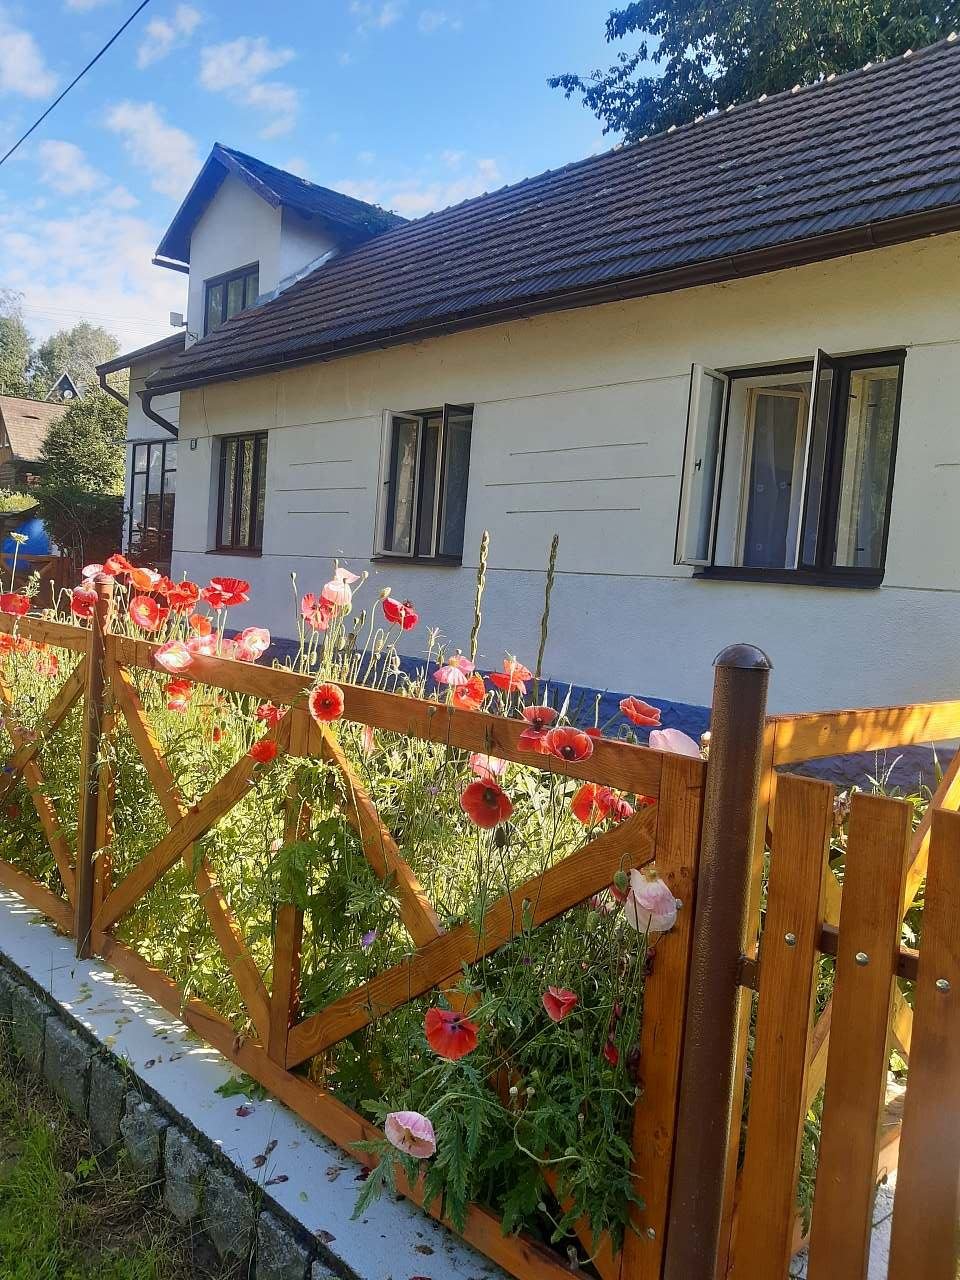 Ubytování Leštinka - máky kvetou